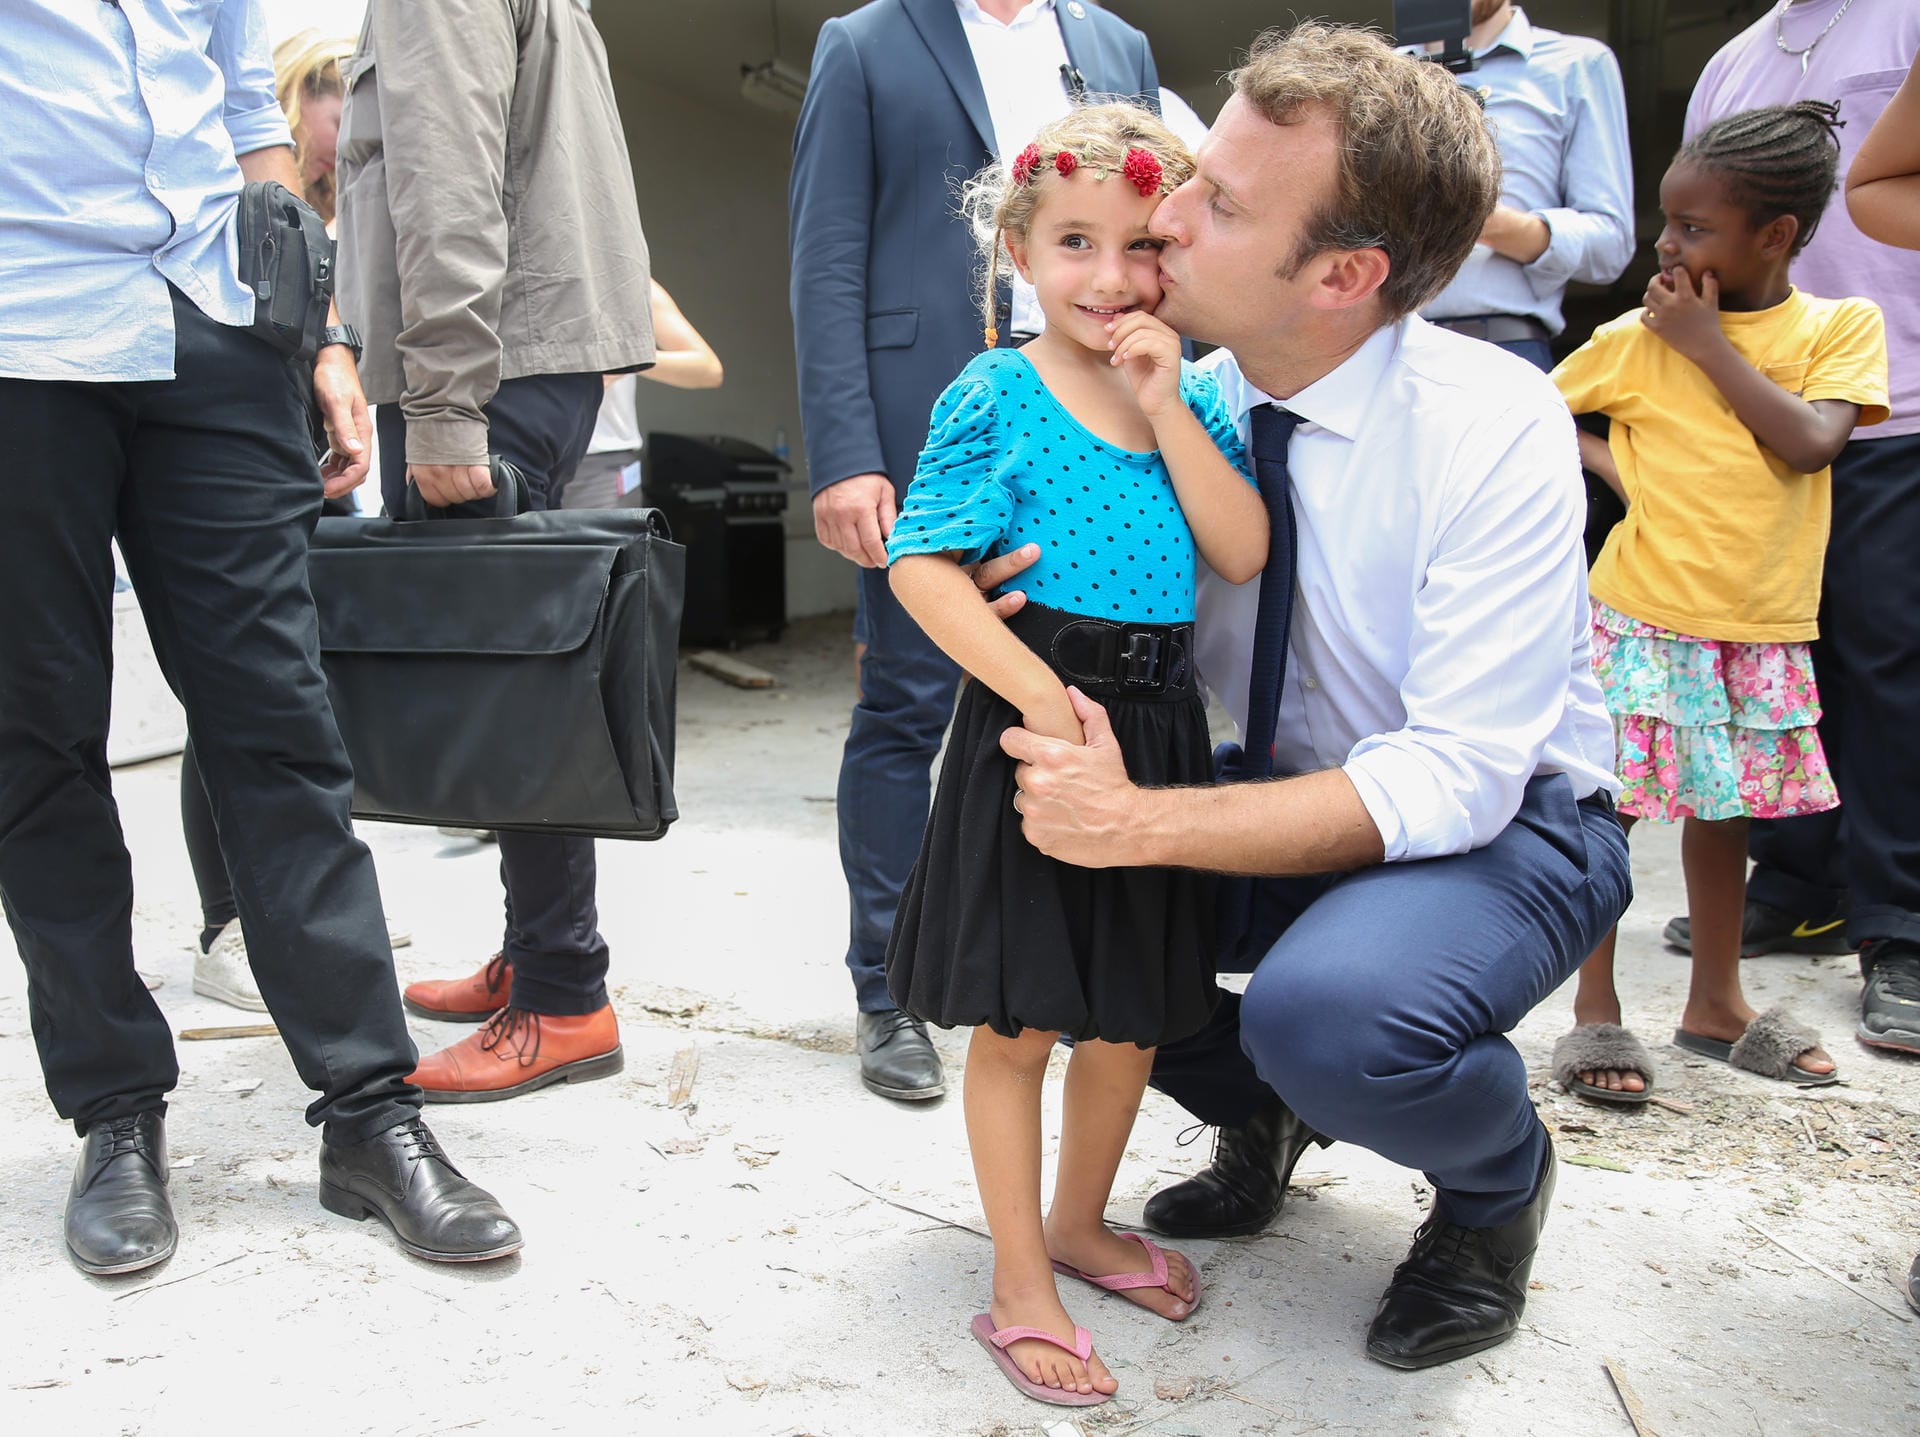 Macron küsst ein kleines Mädchen auf der karibischen Insel Saint Martin nach dem Hurrikan Irma im September 2017: Macron selbst hat keine Kinder, seine Frau brachte 3 Kinder mit in die Ehe. Eine ihrer Töchter ging mit Macron zur Schule.